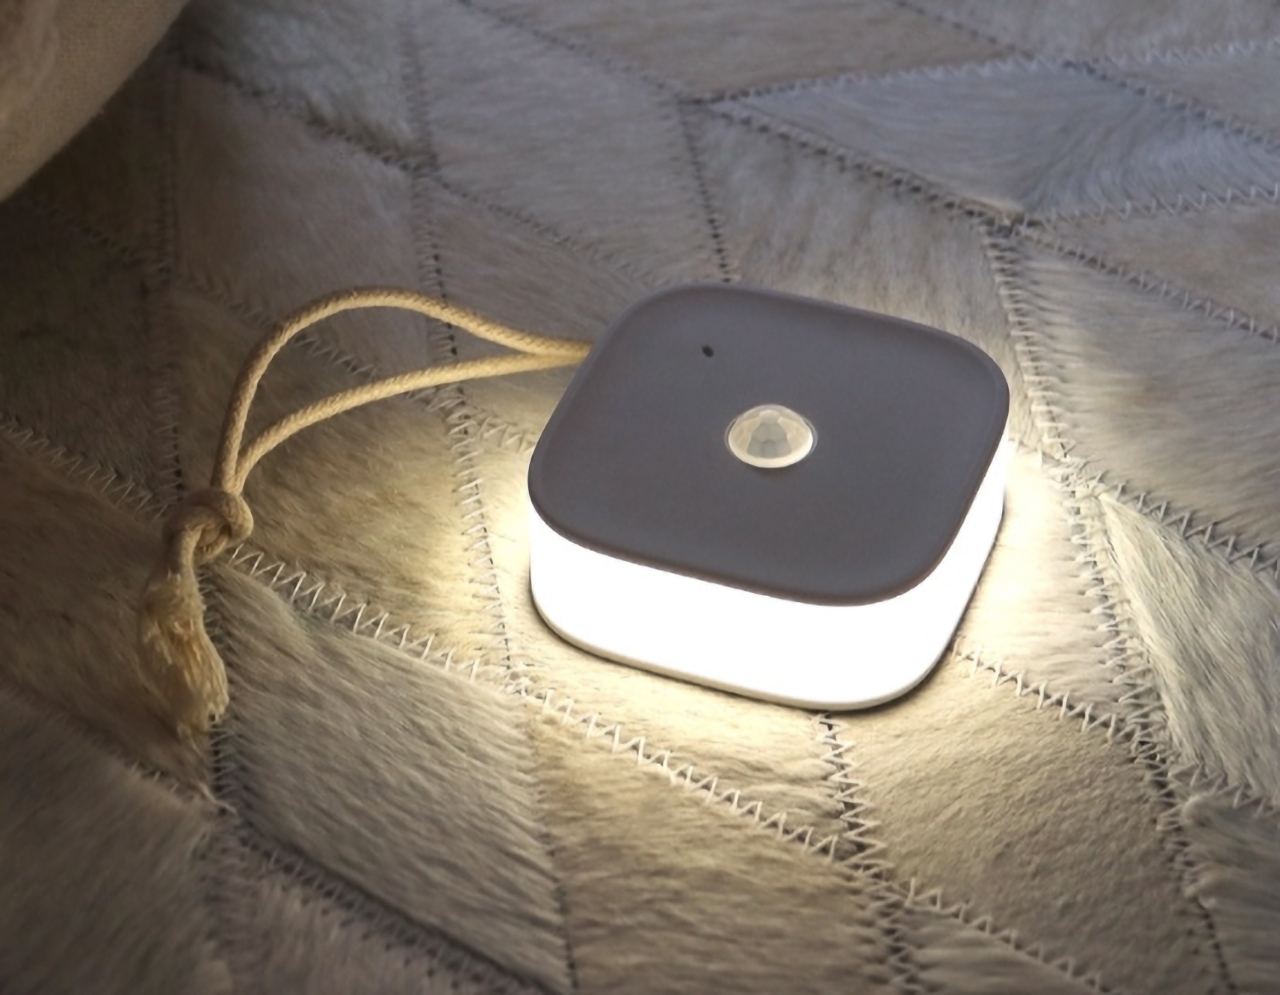 Luz nocturna inalámbrica con sensor de movimiento por $ 12